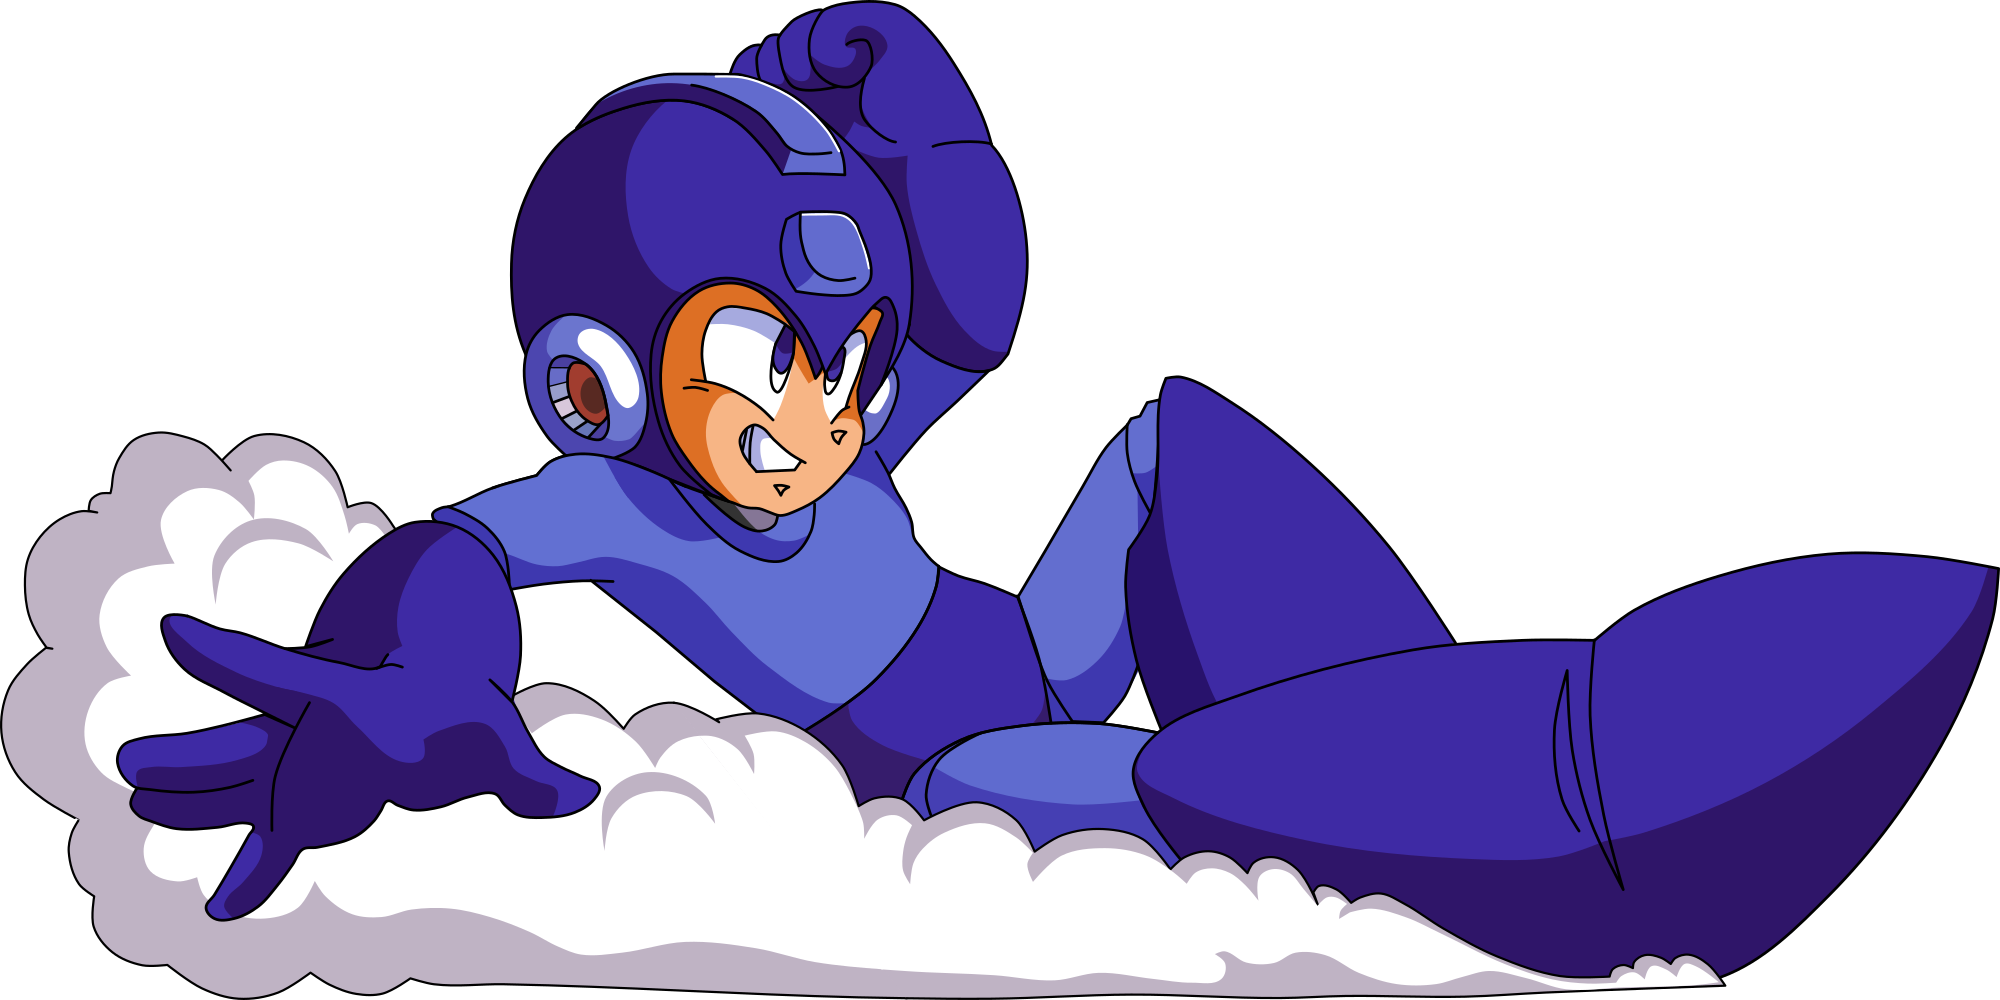 Mega Man sliding